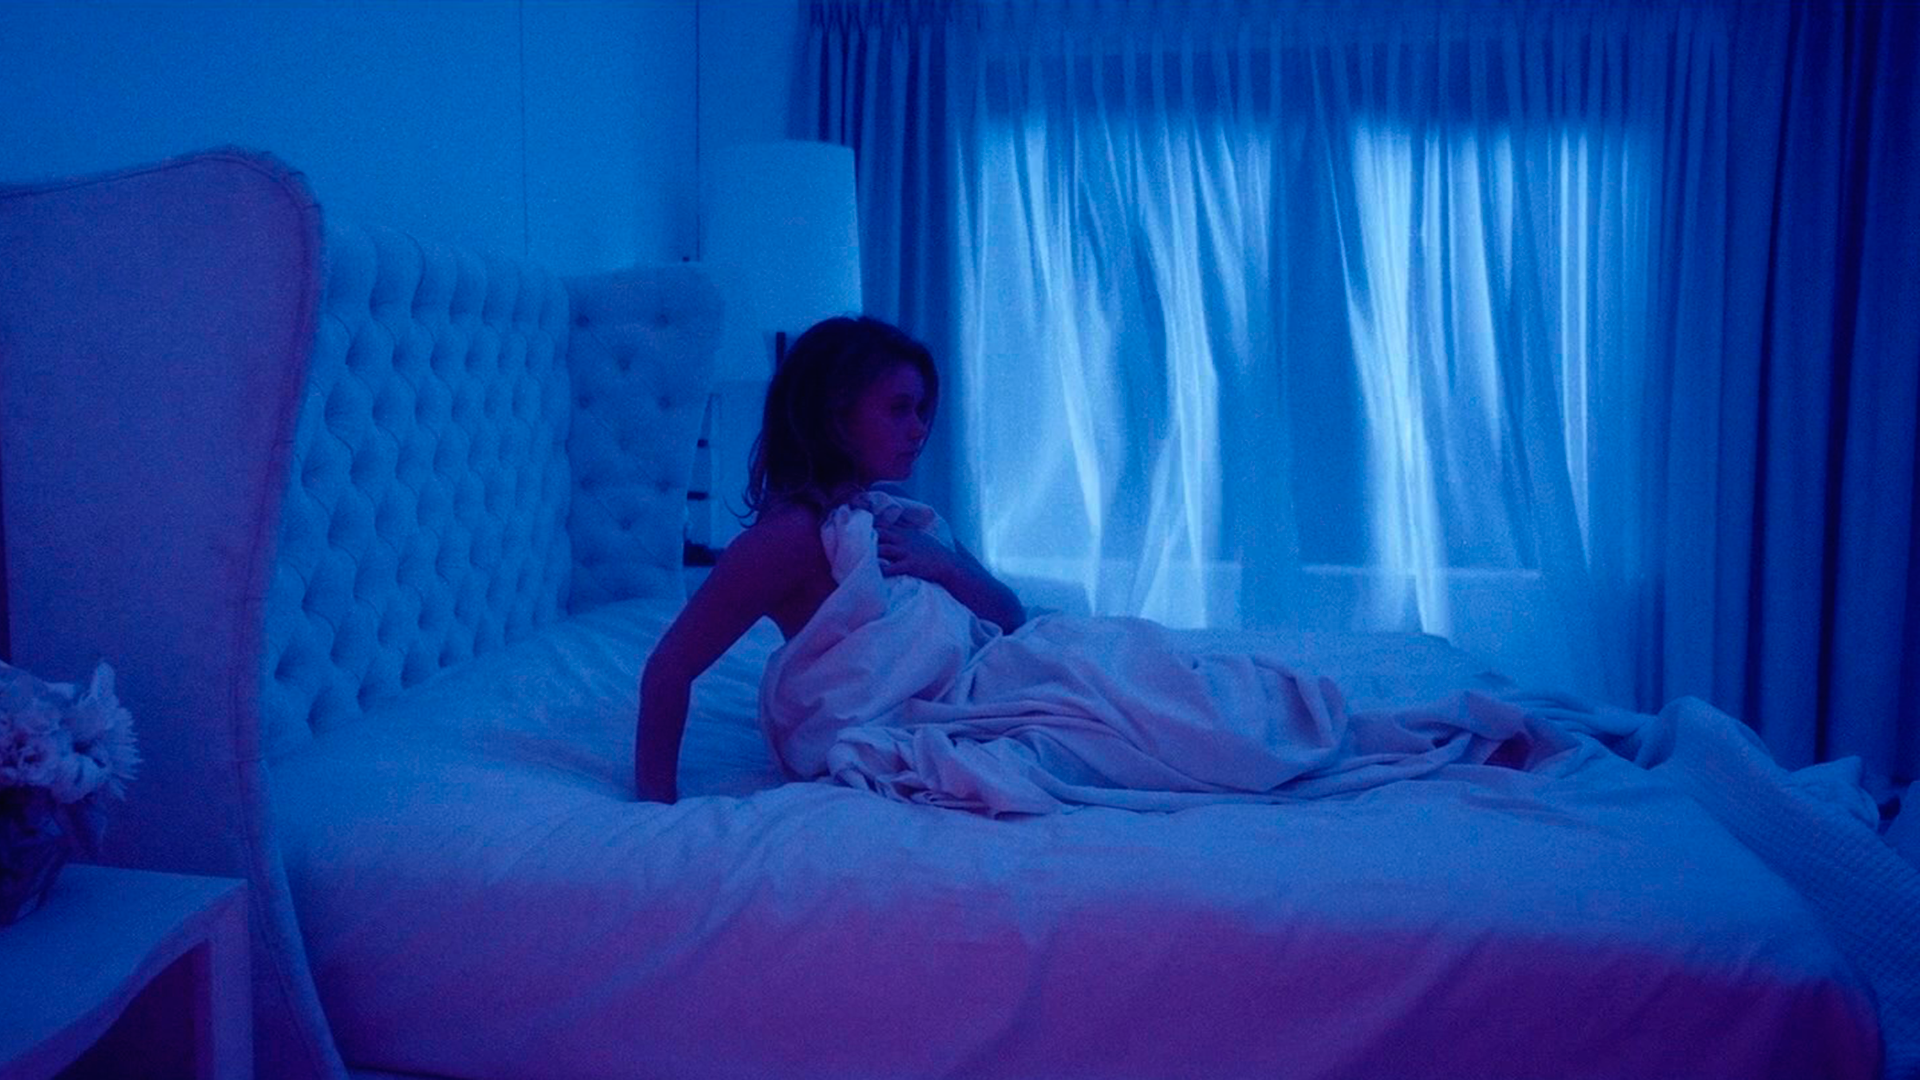 Syd Barrett Legion FX Celebrity Rachel Keller Women Cyan Blue In Bed 1920x1080